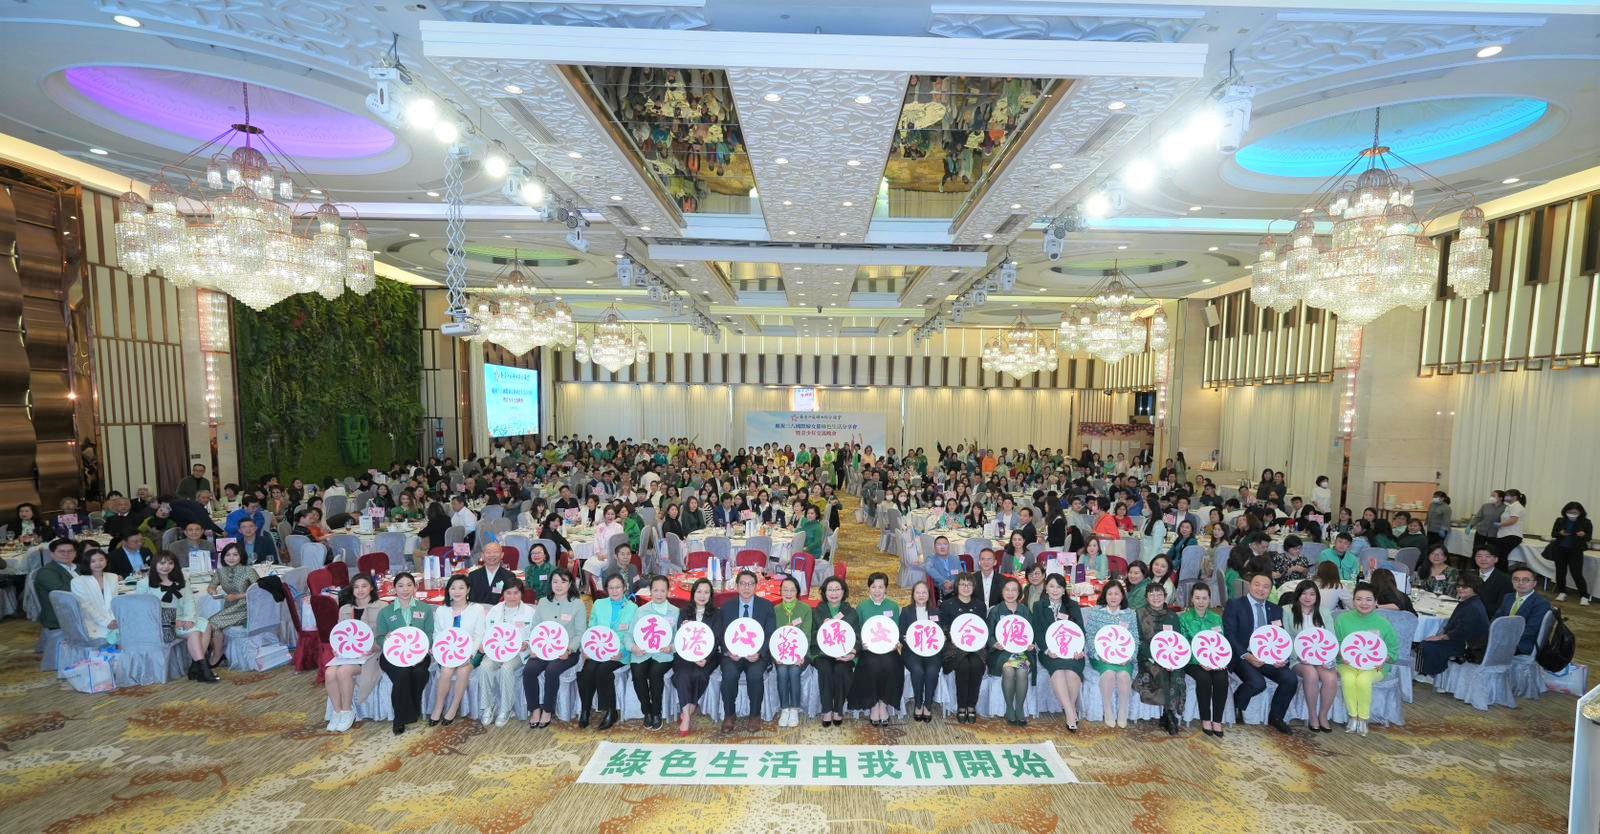 江蘇婦女聯合總會推廣環保賀婦女節